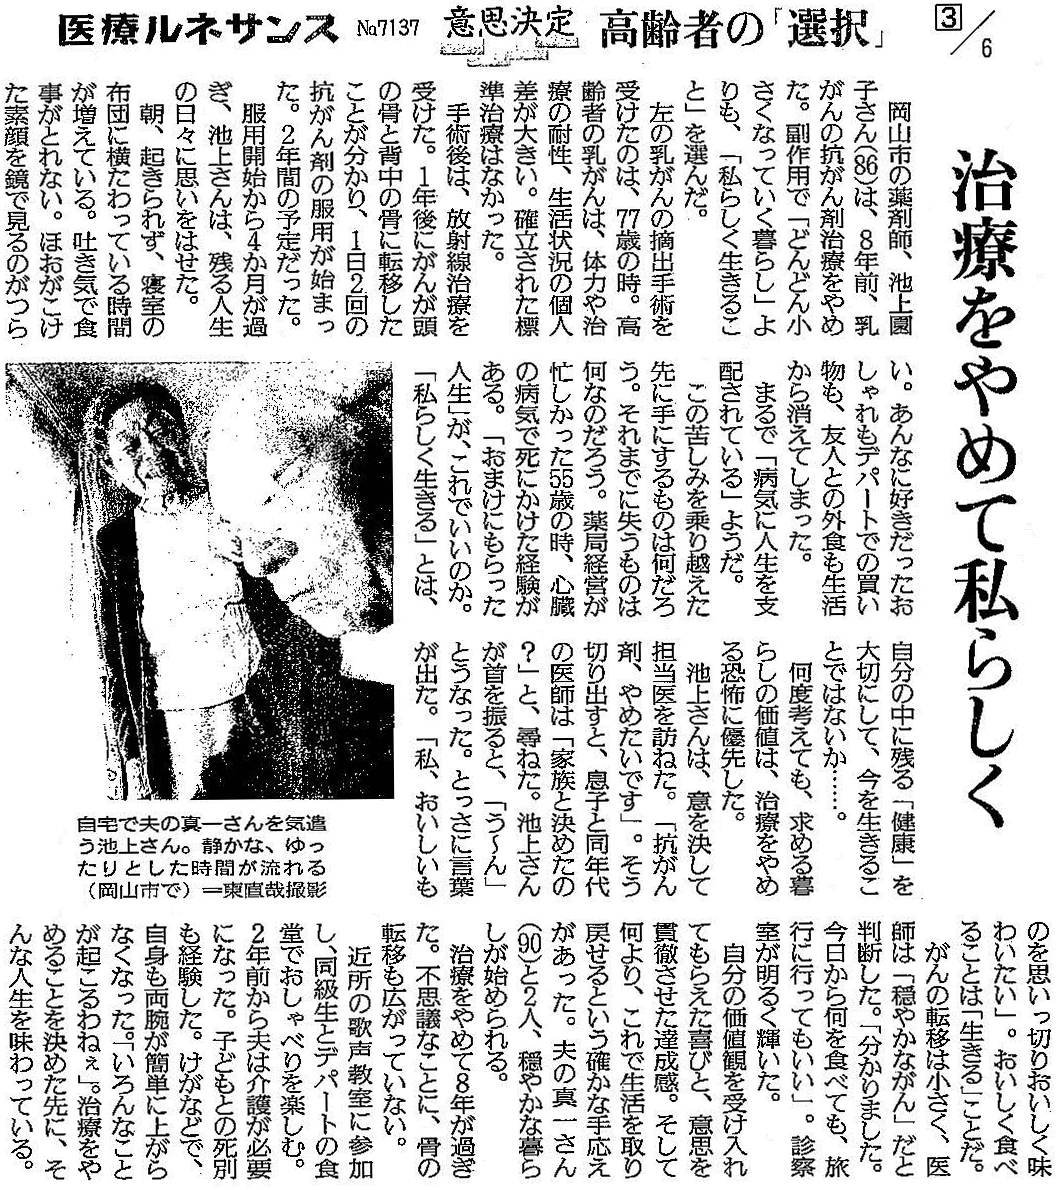 読売新聞 2019年10月4日掲載